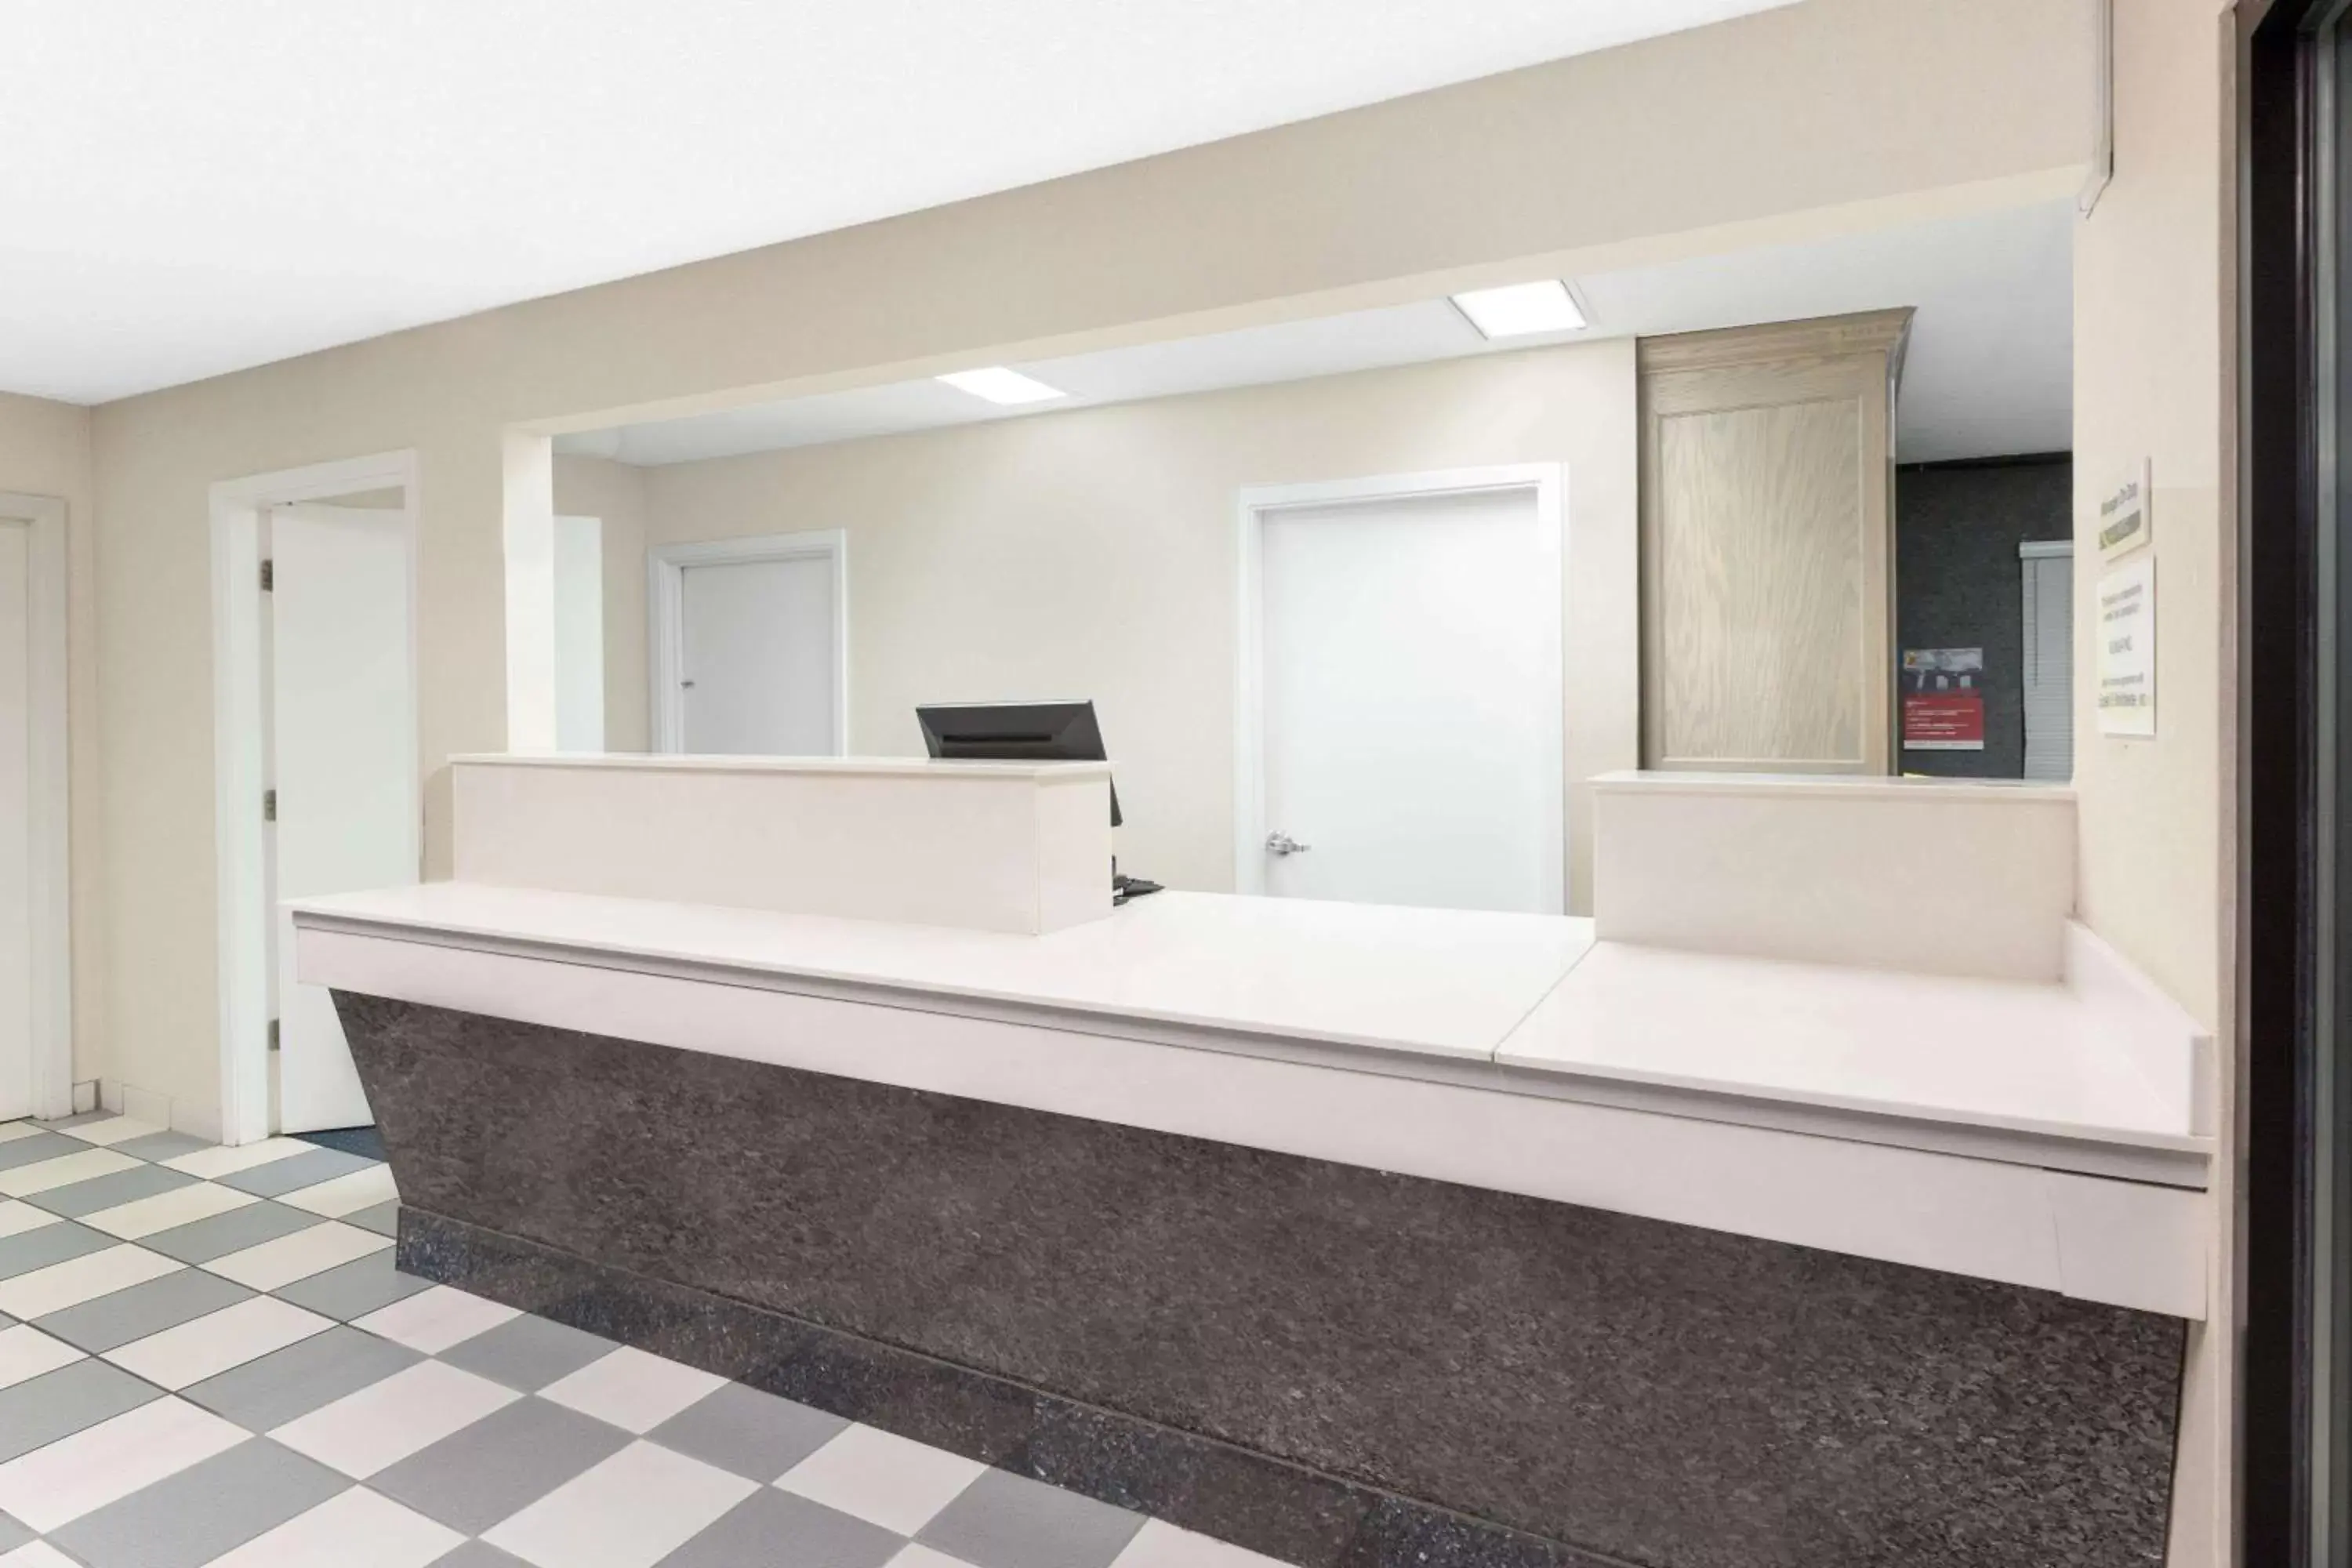 Lobby or reception, Bathroom in Super 8 by Wyndham Hattiesburg South